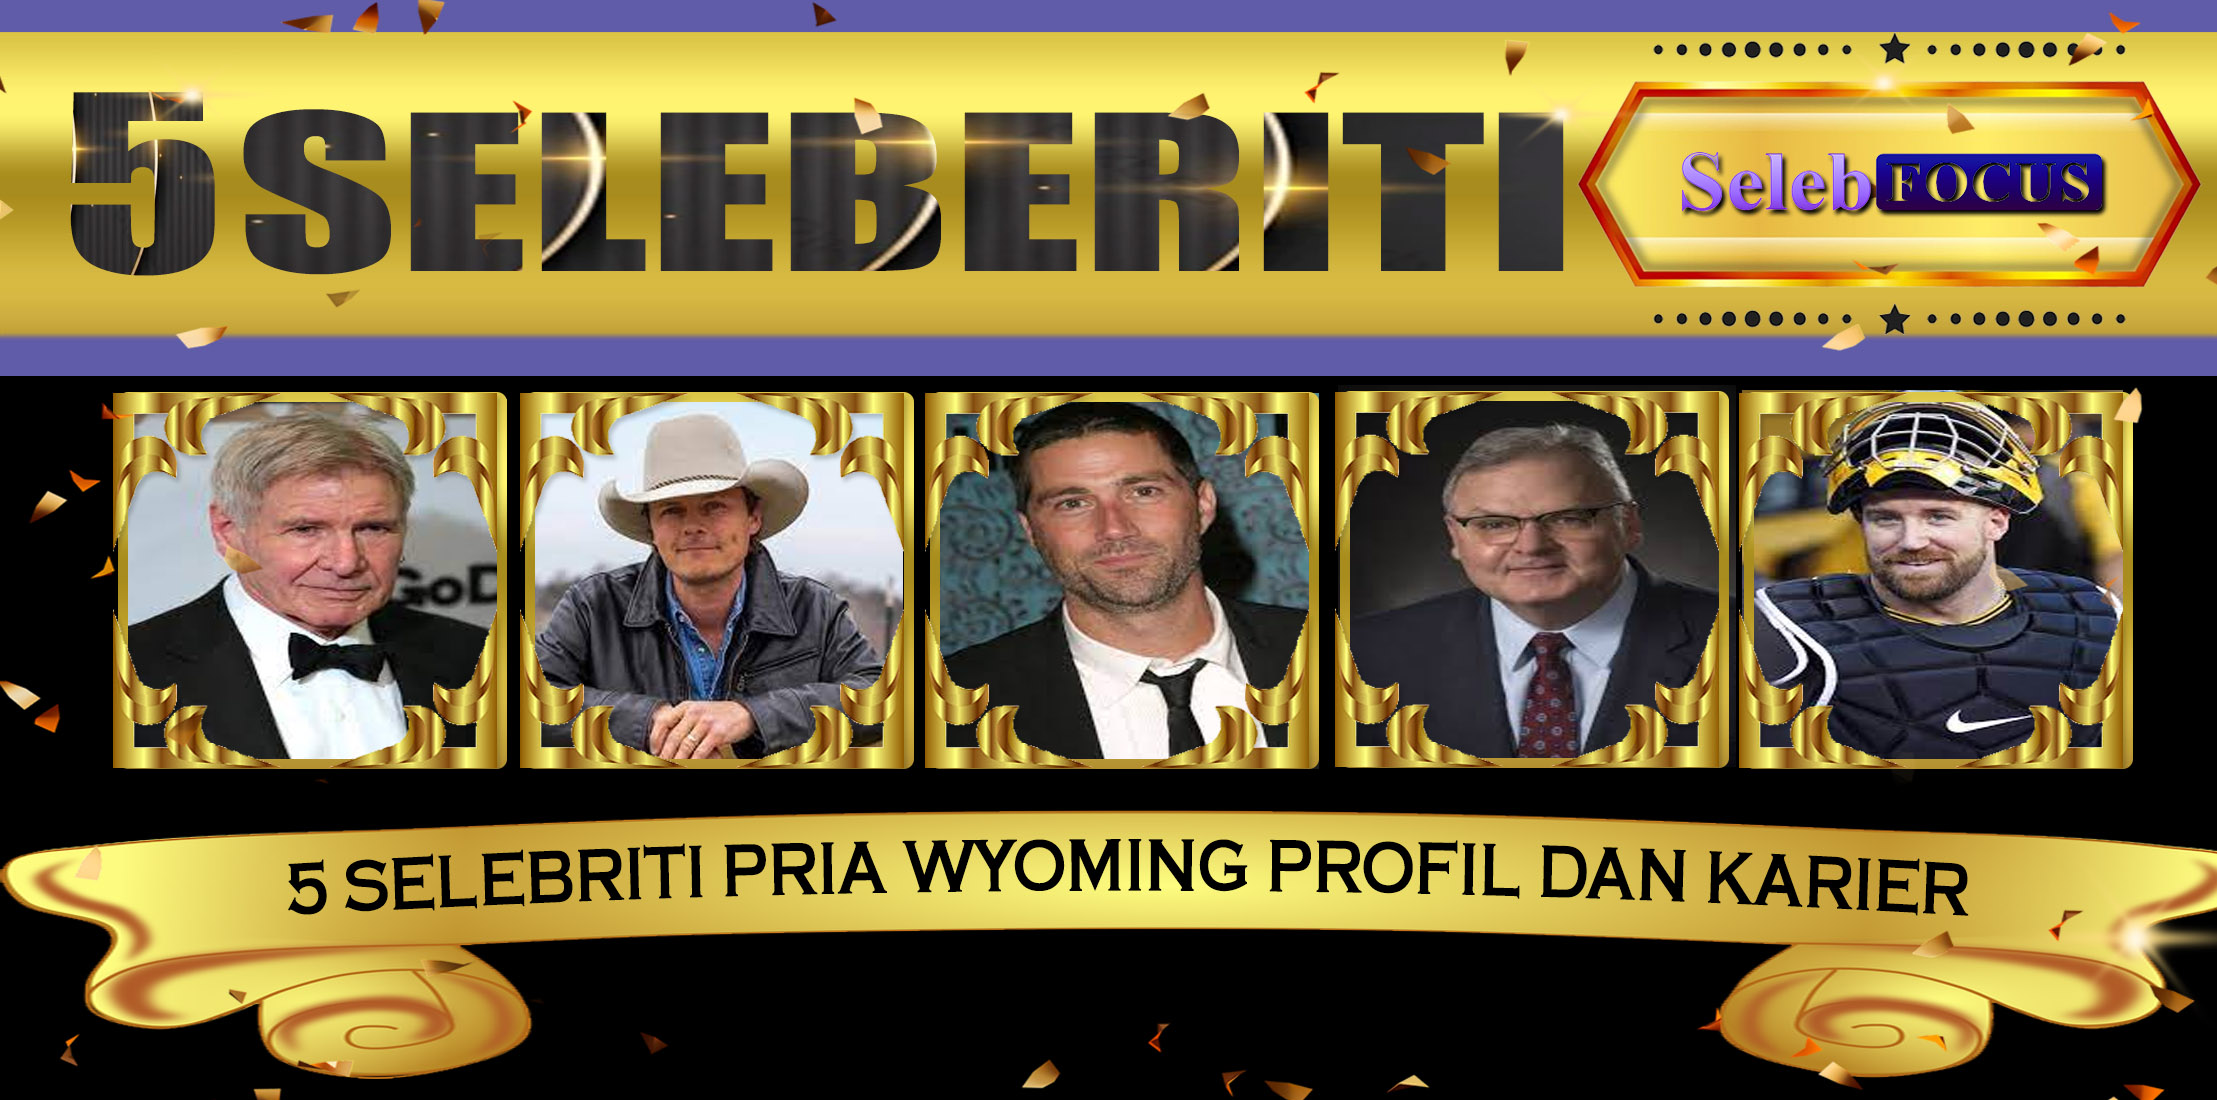 5 Selebriti Pria Wyoming Profil dan Karier